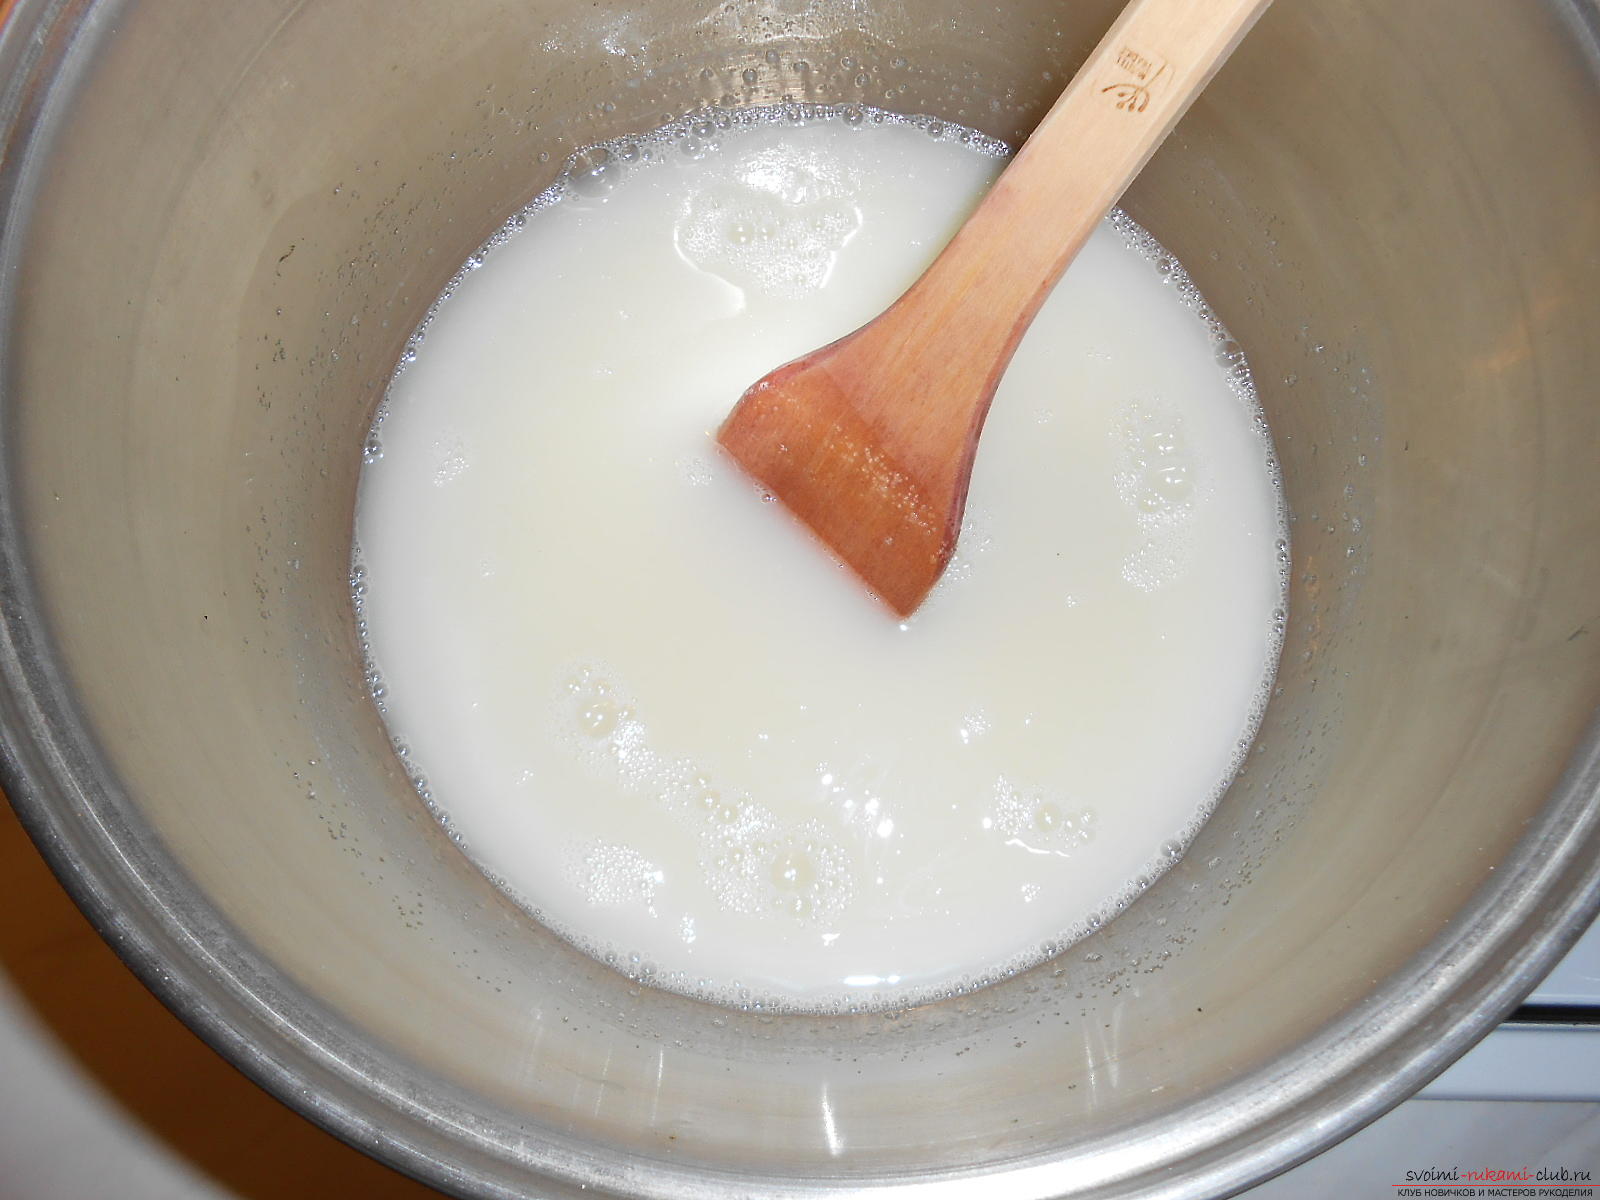 Мастер-класс научит печь пряники в домашних условиях, сахарная глазурь которых защитит их от черствения.. Фото №5